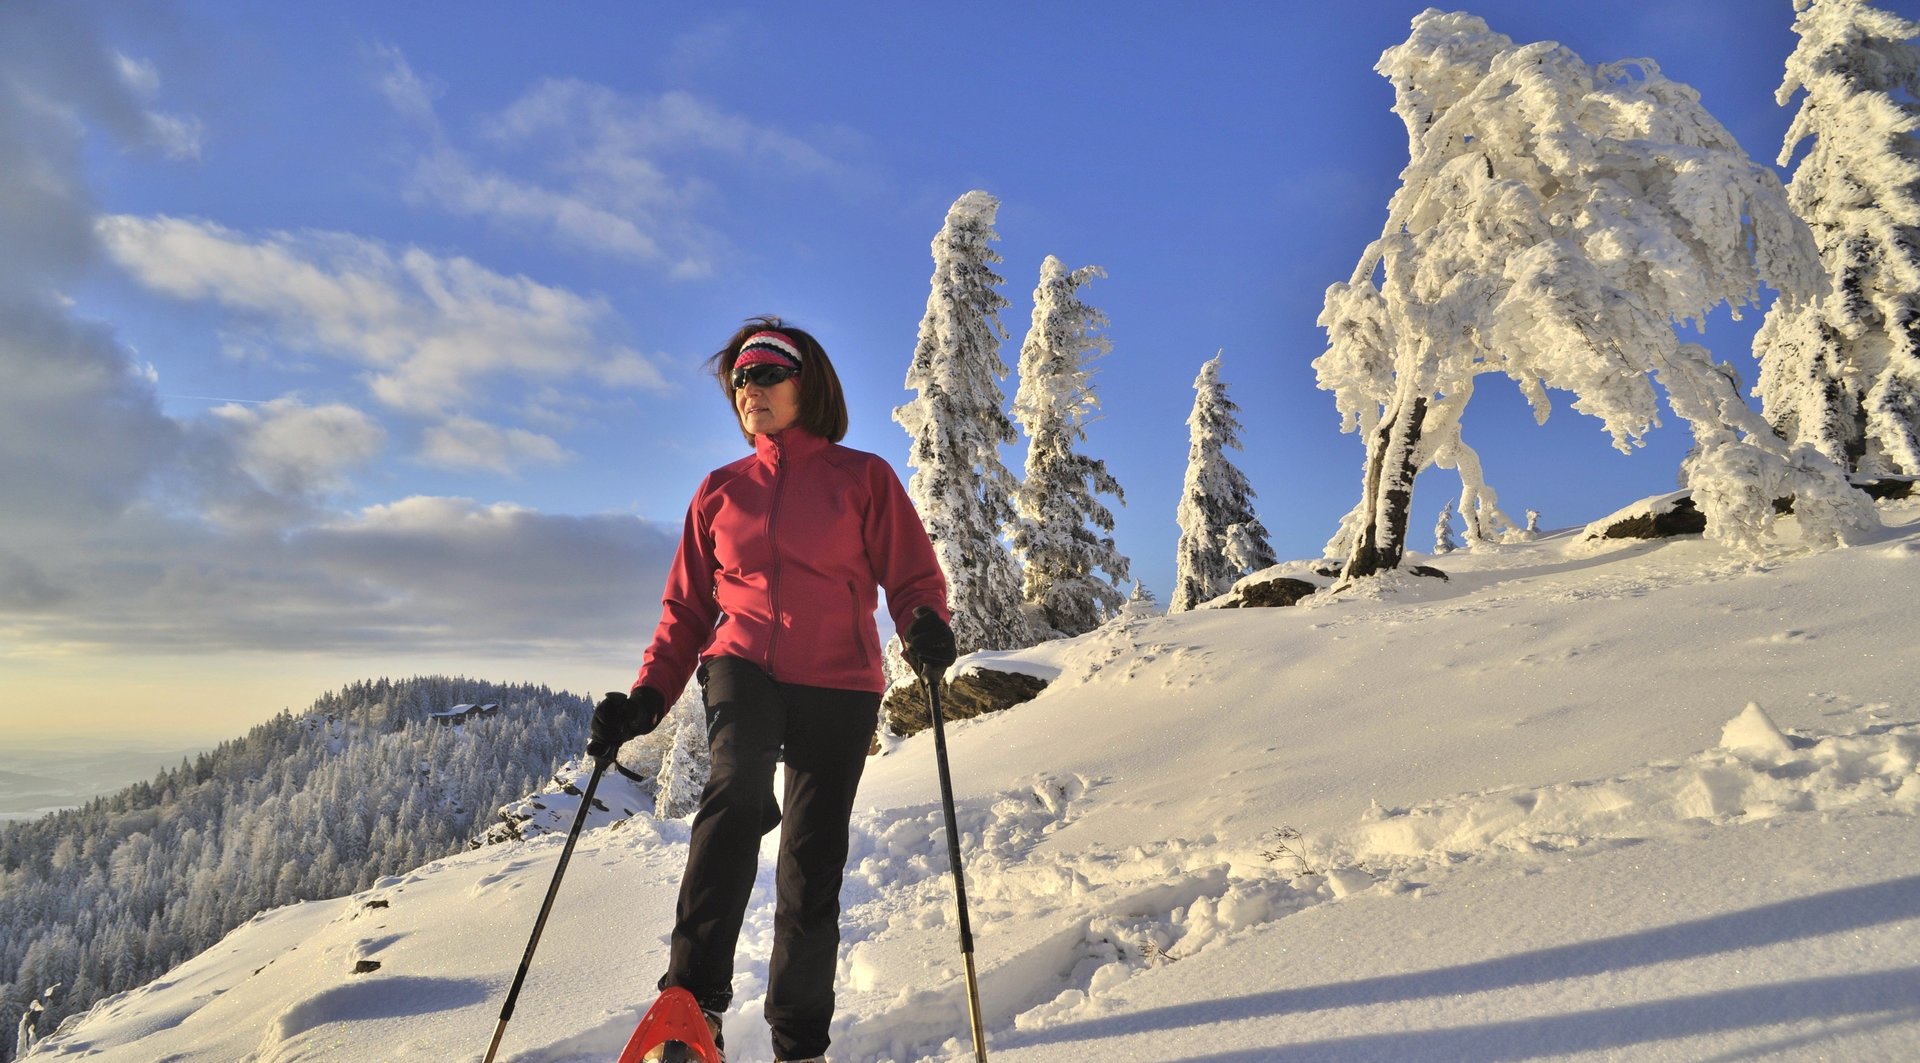 Blick auf eine Frau mit Schneeschuhen in einer Winterlandschaft, im Hintergrund sieht man die Kötztinger Hütte